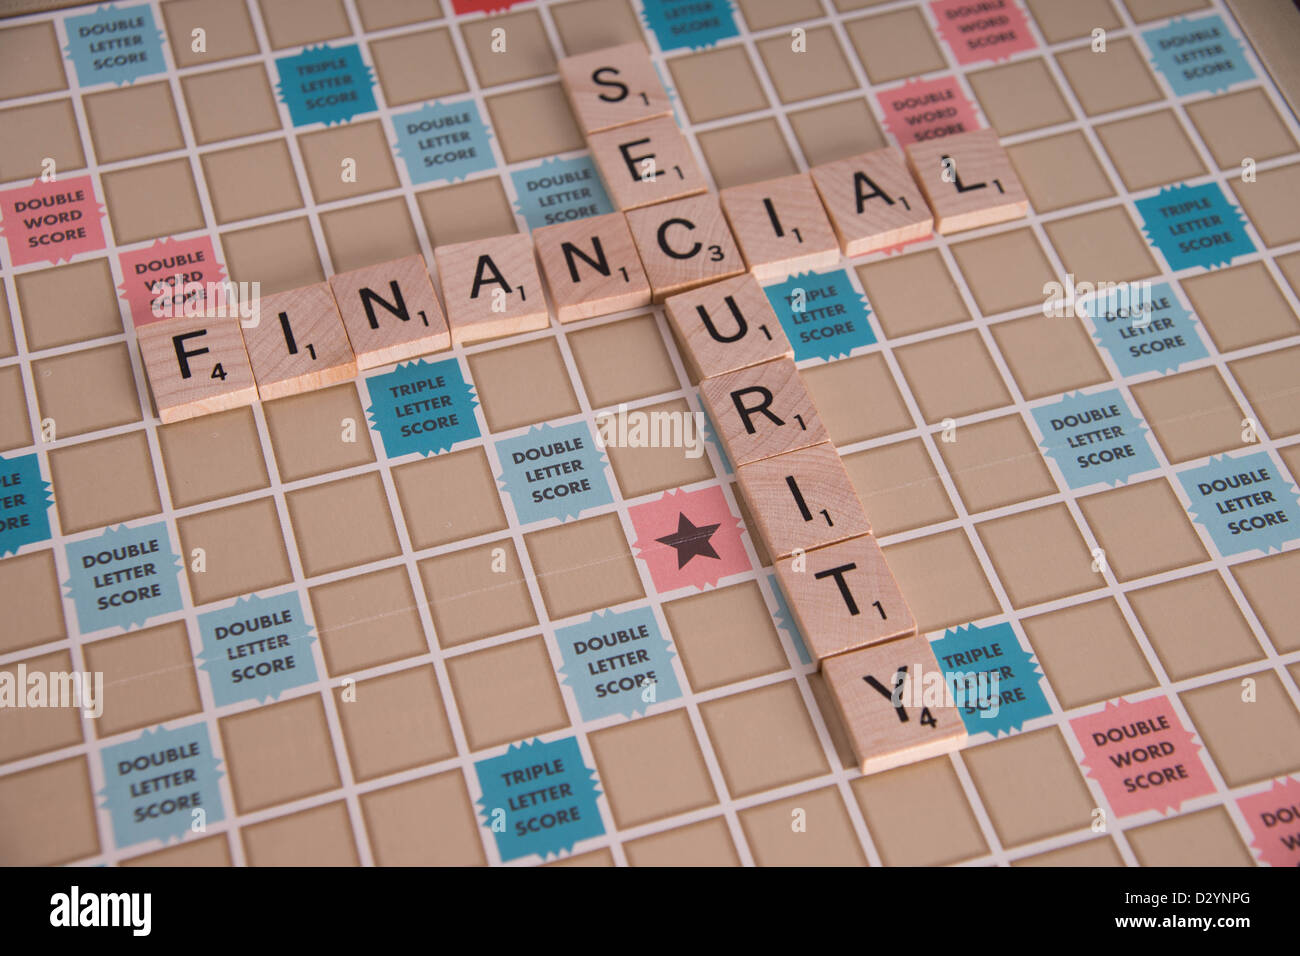 Concepto de "seguridad financiera" escrito en letras de Scrabble Scrabble junta Foto de stock